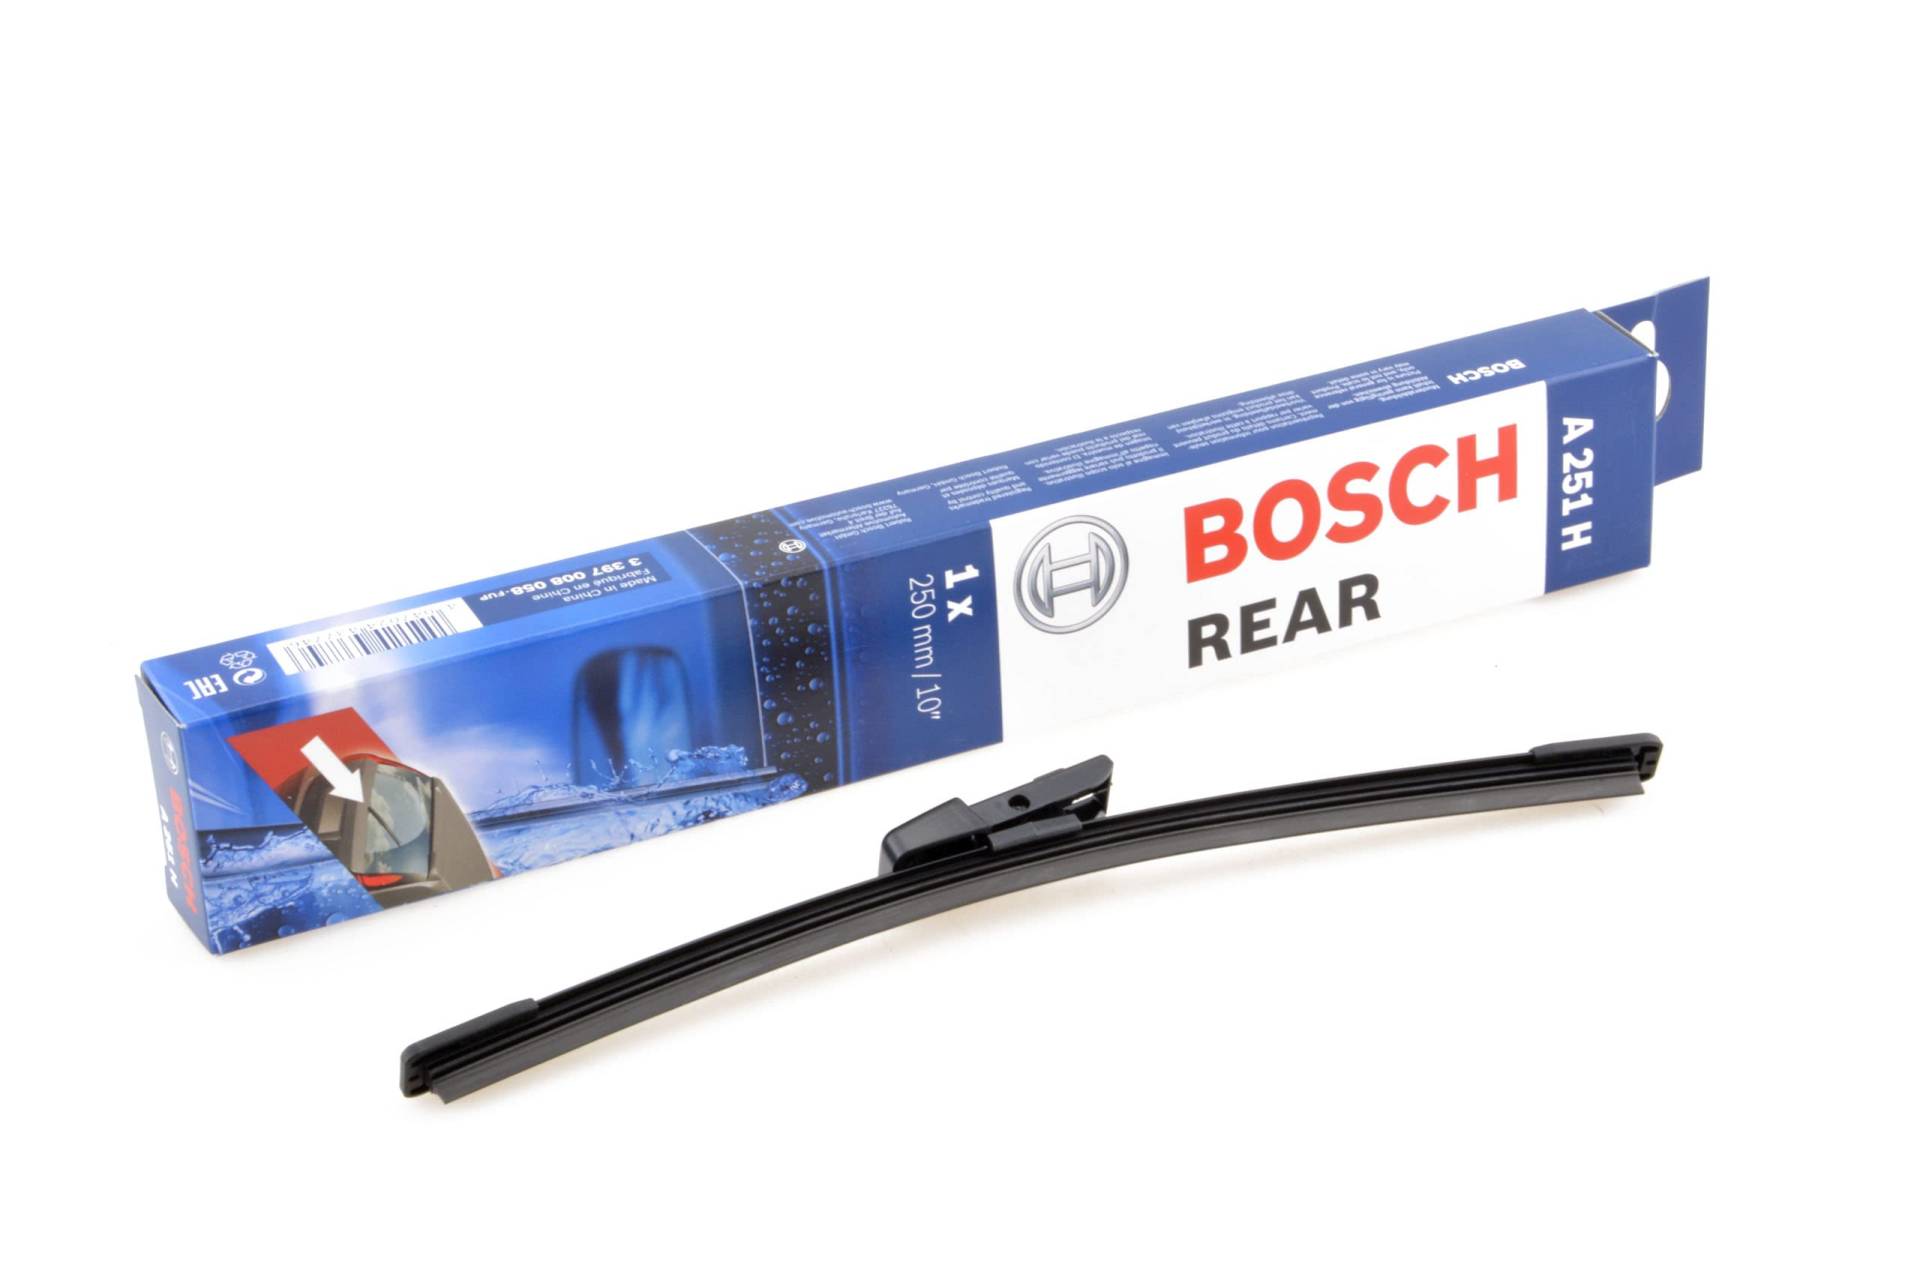 Scheibenwischer für Heckscheibe kompatibel mit Seat Arona Bj. ab 2017 ideal angepasst Bosch TWIN von KO-BOSCHAEROECO